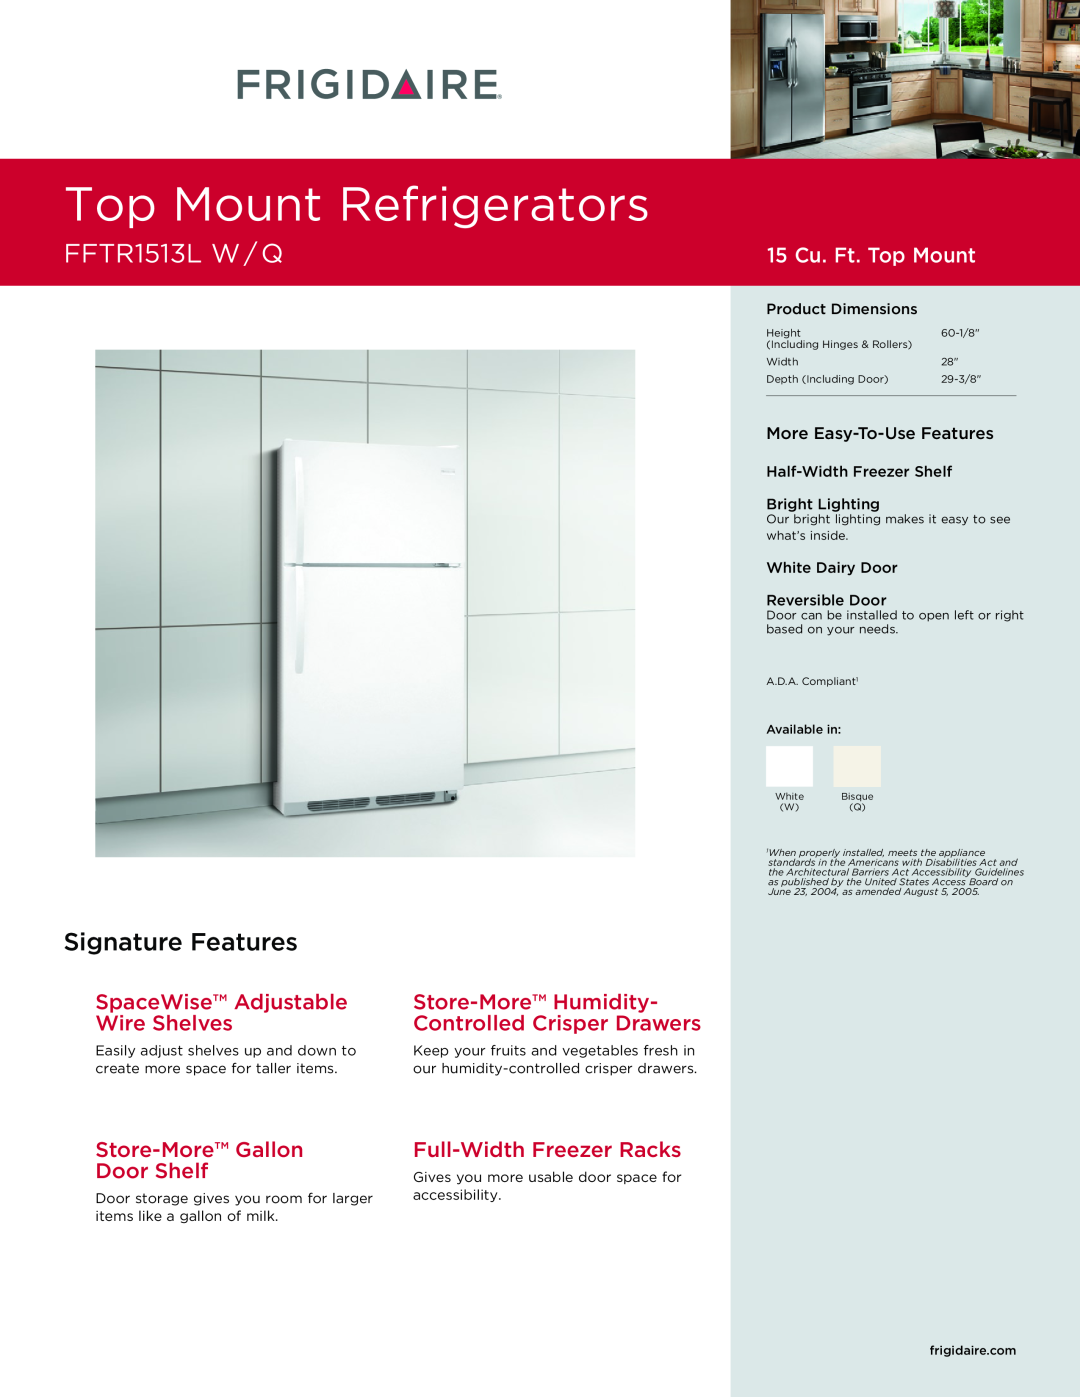 Frigidaire FFTR1513L W/Q dimensions Top Mount Refrigerators, FFTR1513L w / Q, Signature Features, 15 Cu. Ft. Top Mount 